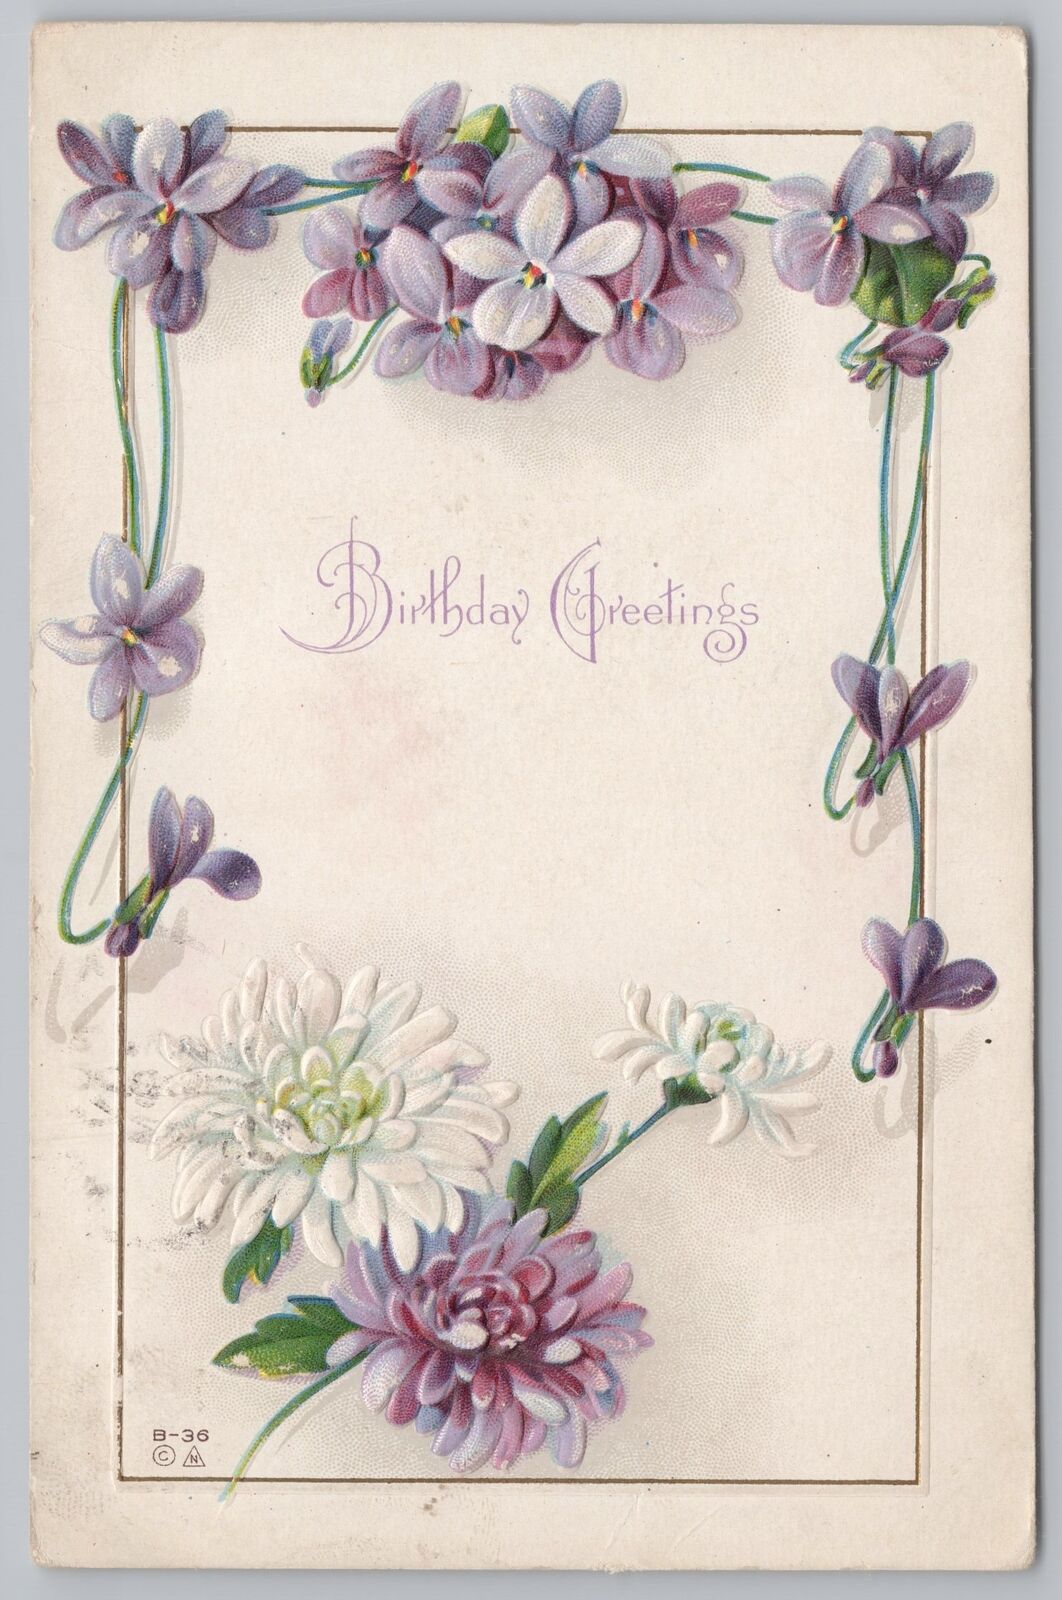 Greetings~E Nash~Birthday Greetings~Violets & White Flowers~Emb~PM 1912 Postcard